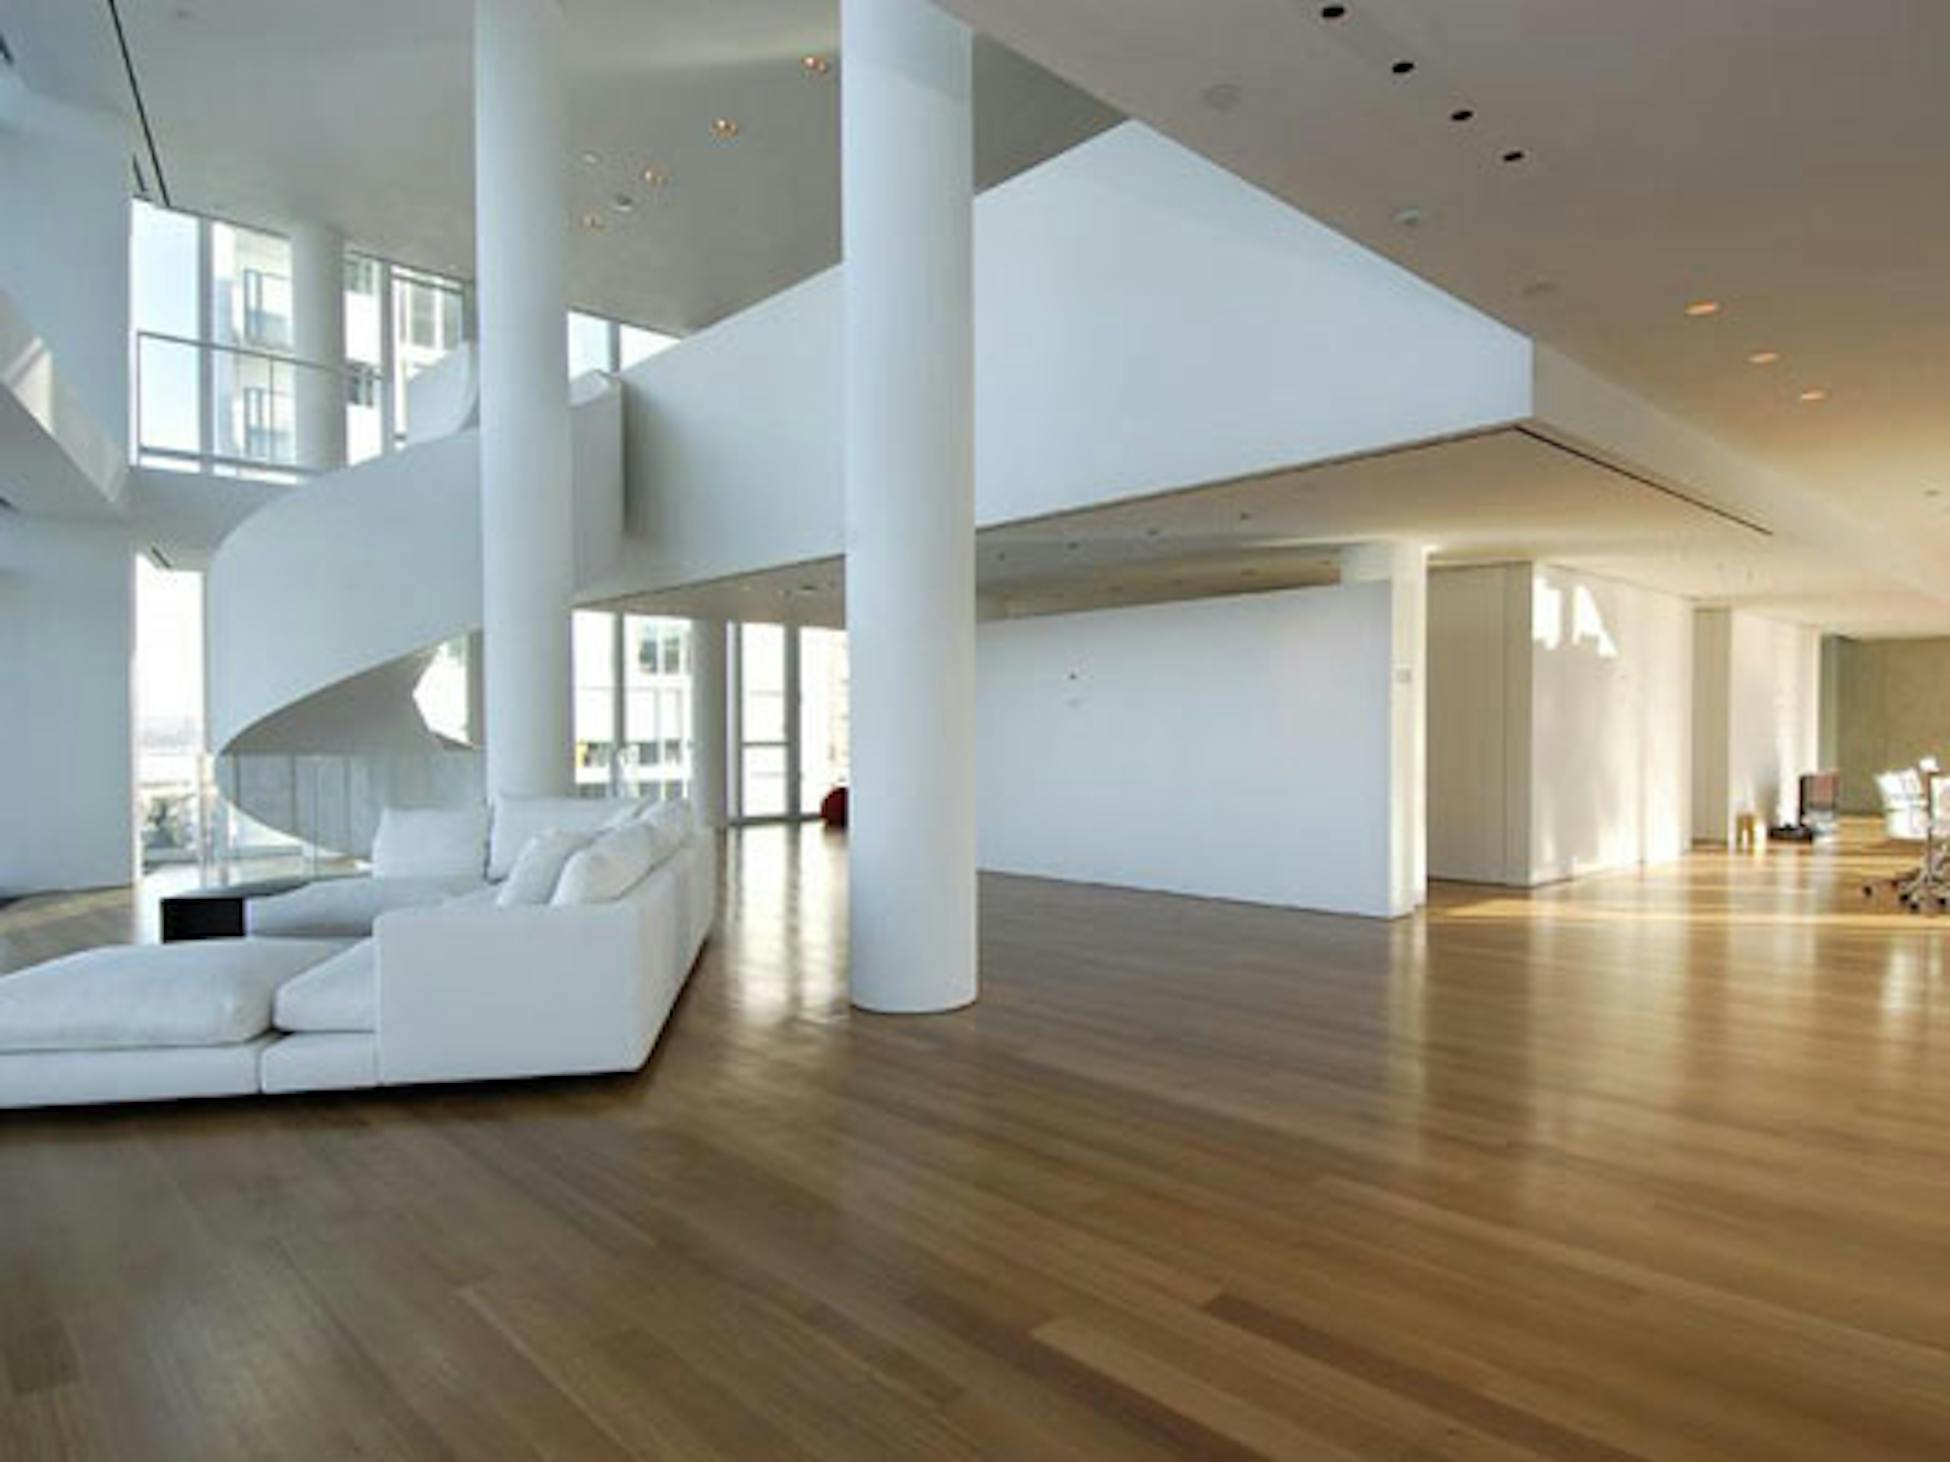 Жилое помещение представляет собой. Дом Хью Джекмана в Нью Йорке. Дом Хью Джекман интерьер. Модерн и постмодерн в интерьере.